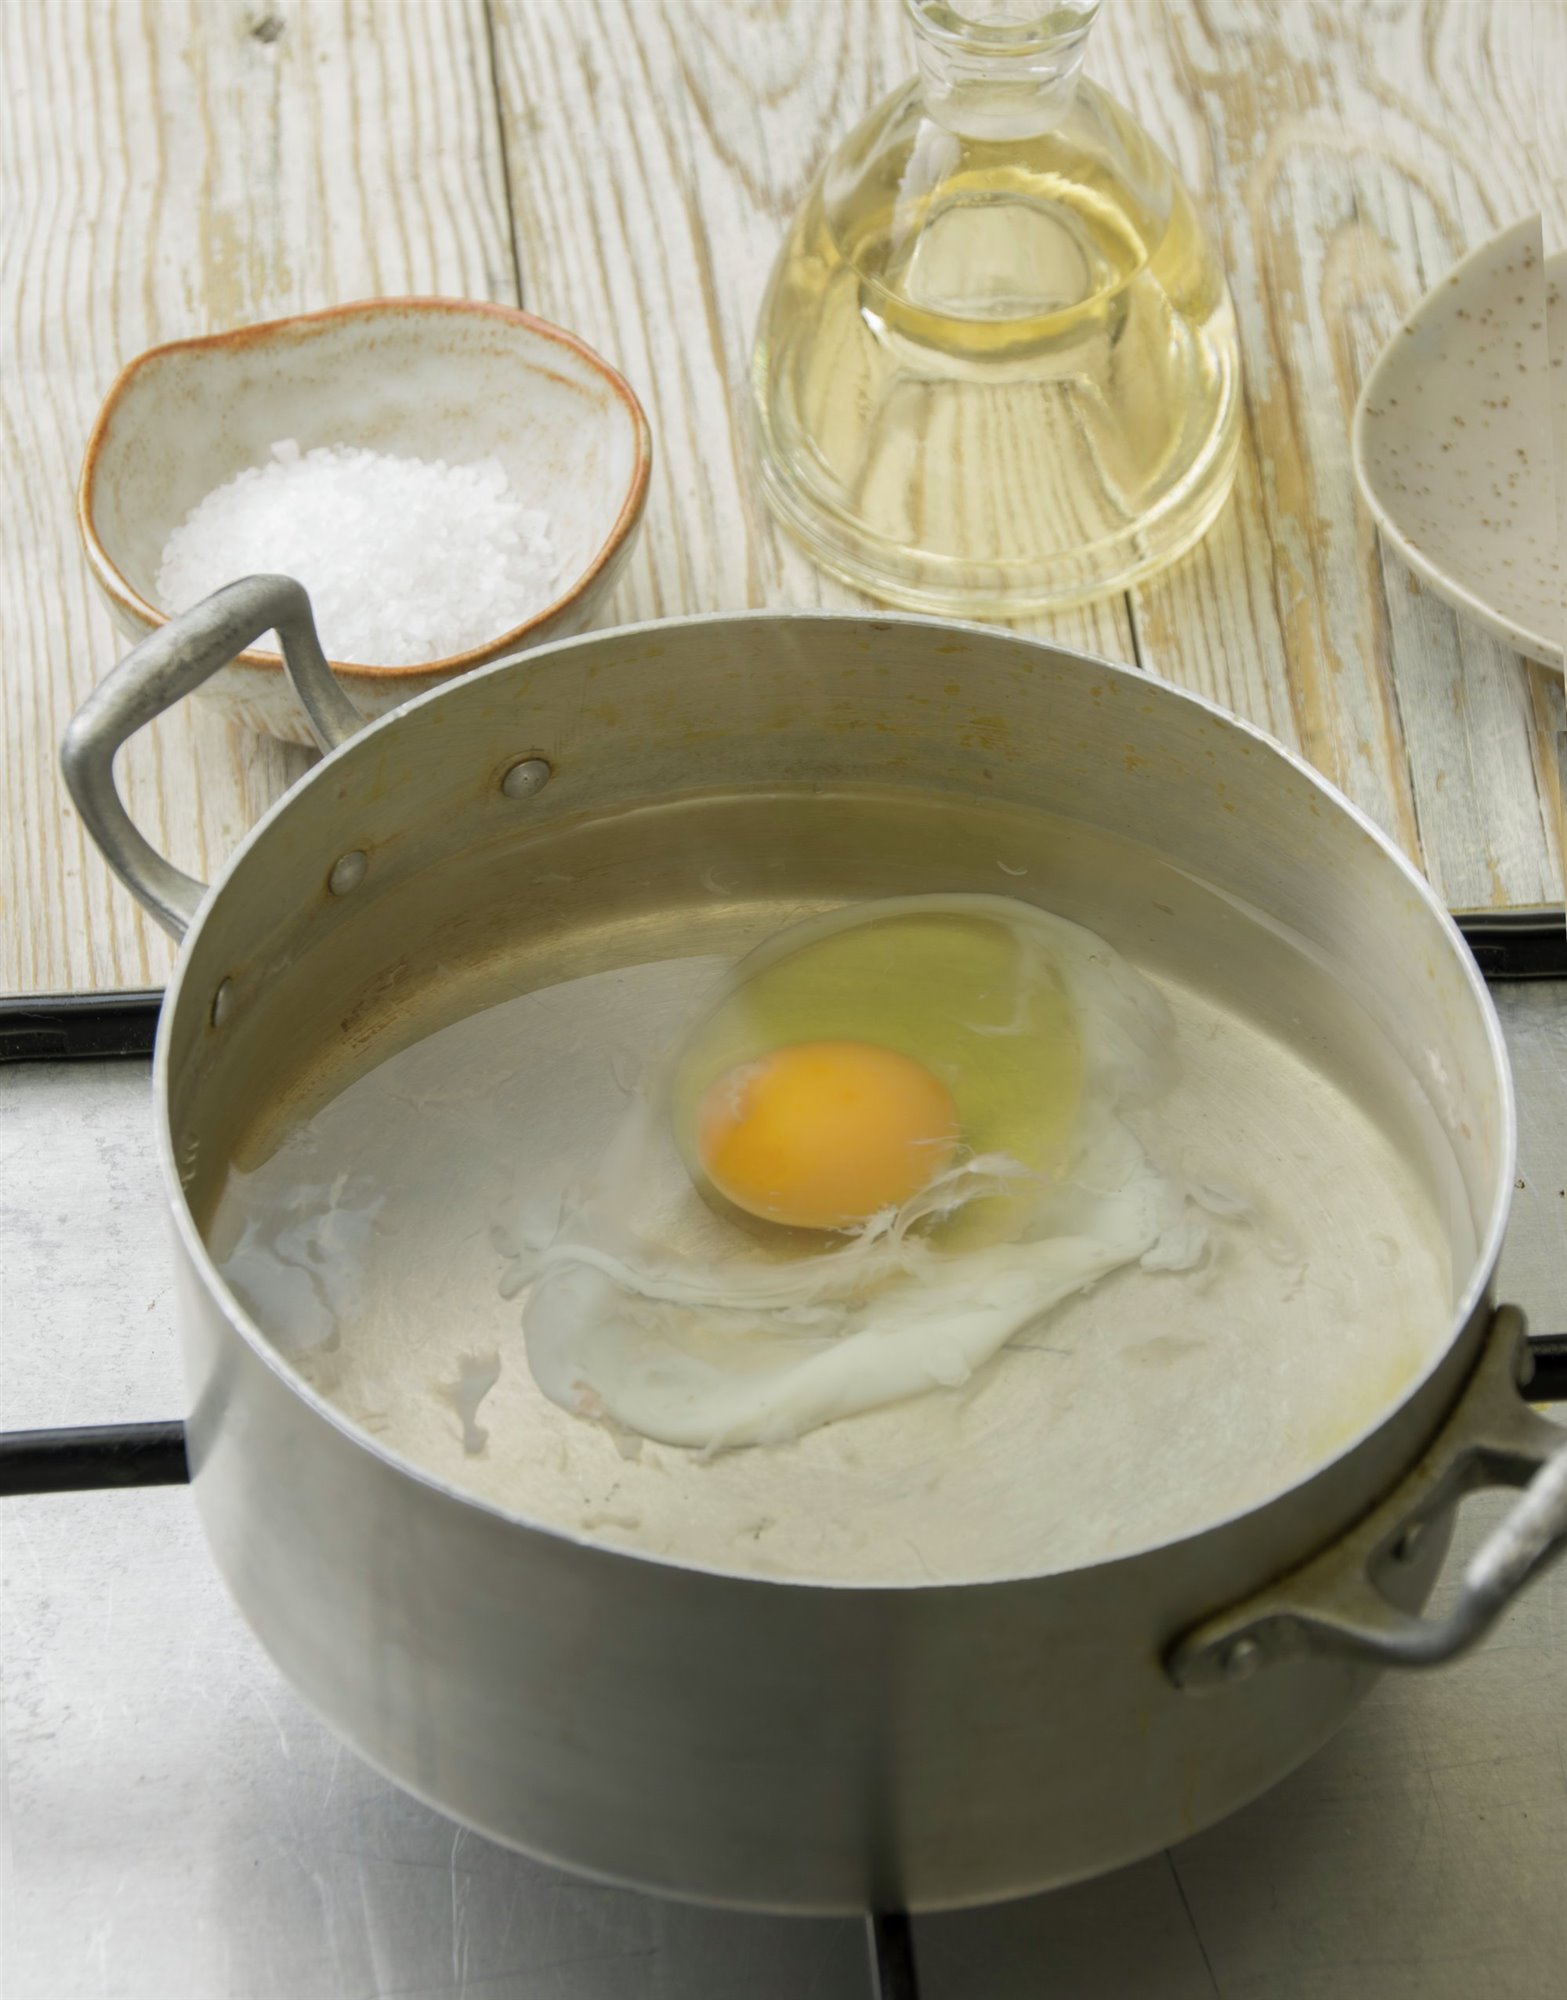 1. Prepara los huevos escalfados